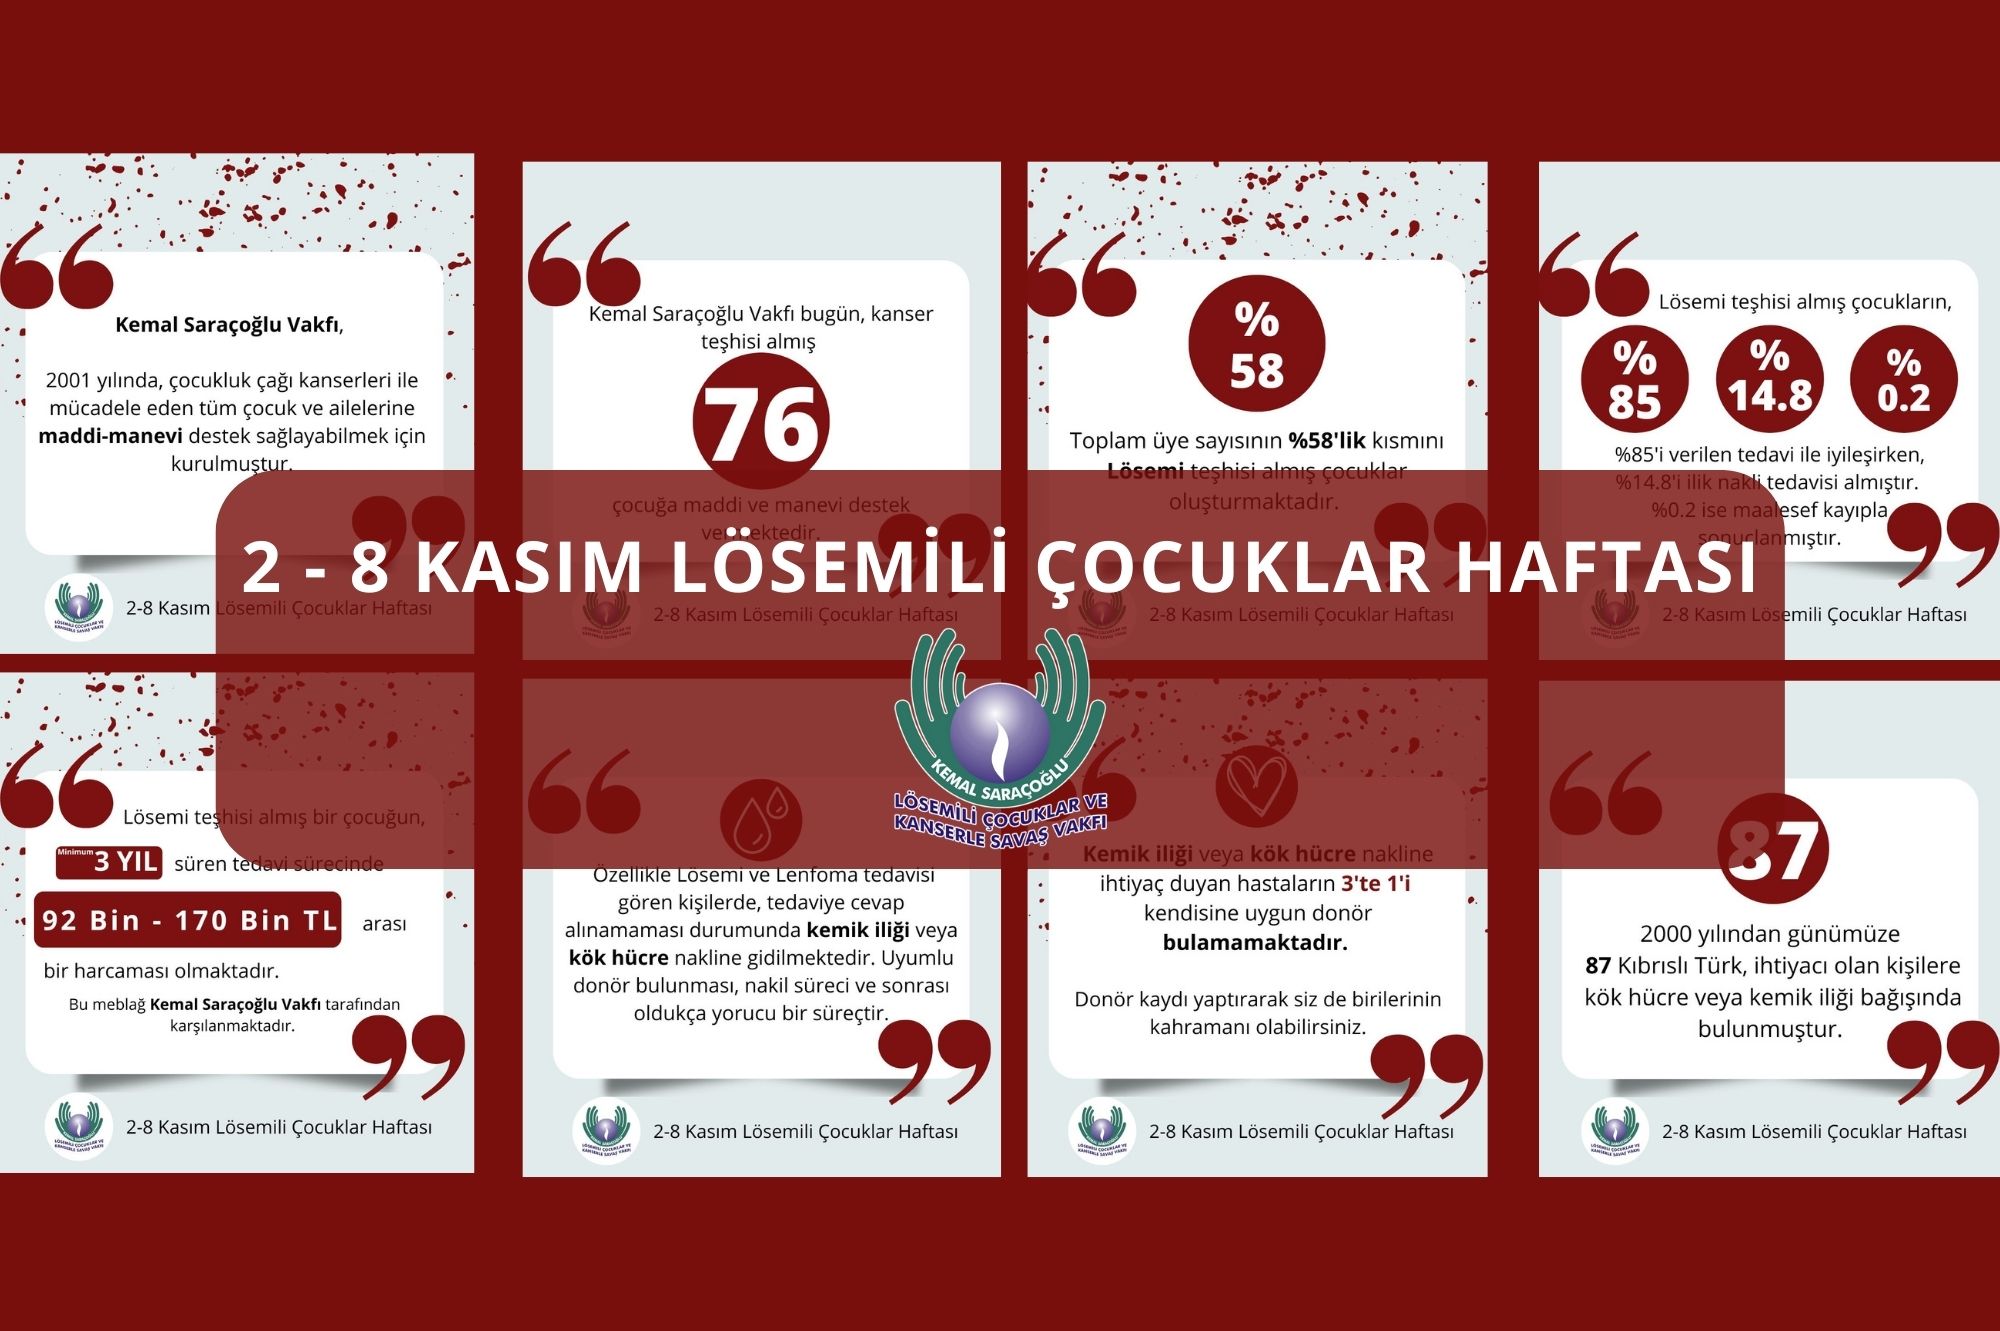 2-8 Kasım Lösemili Çocuklar Haftası: Tek dileğimiz farkındalık ve halkımızın desteği